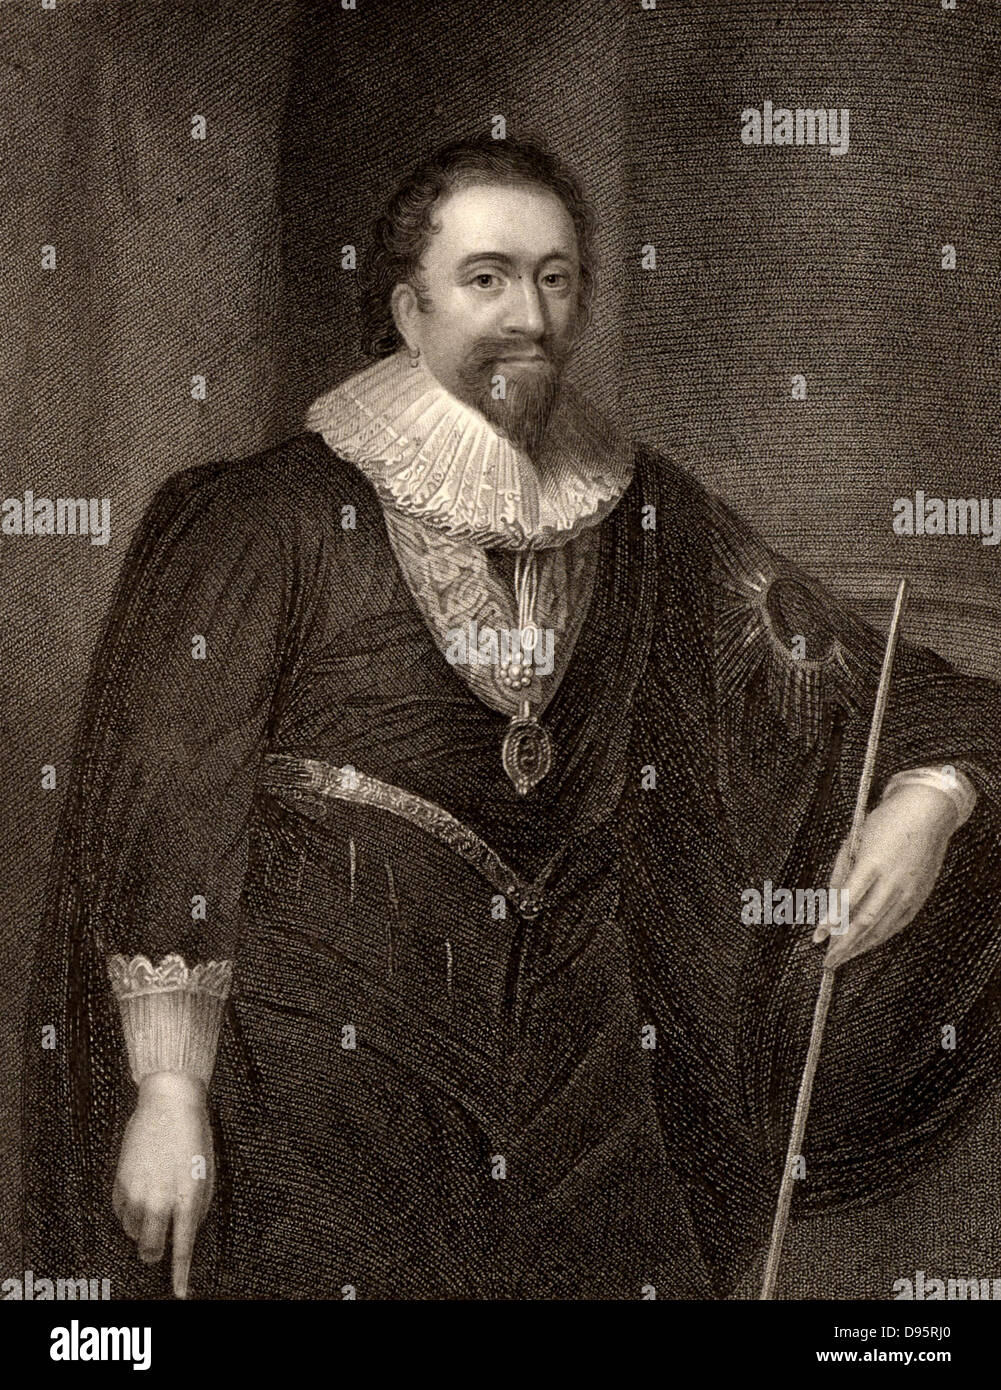 William Herbert, 3rd Earl of Pembroke (1580-1630) Englischer Dichter und Höfling. Patron von Ben Jonson, Philip Massinger und Inigo Jones. Gravur. Stockfoto